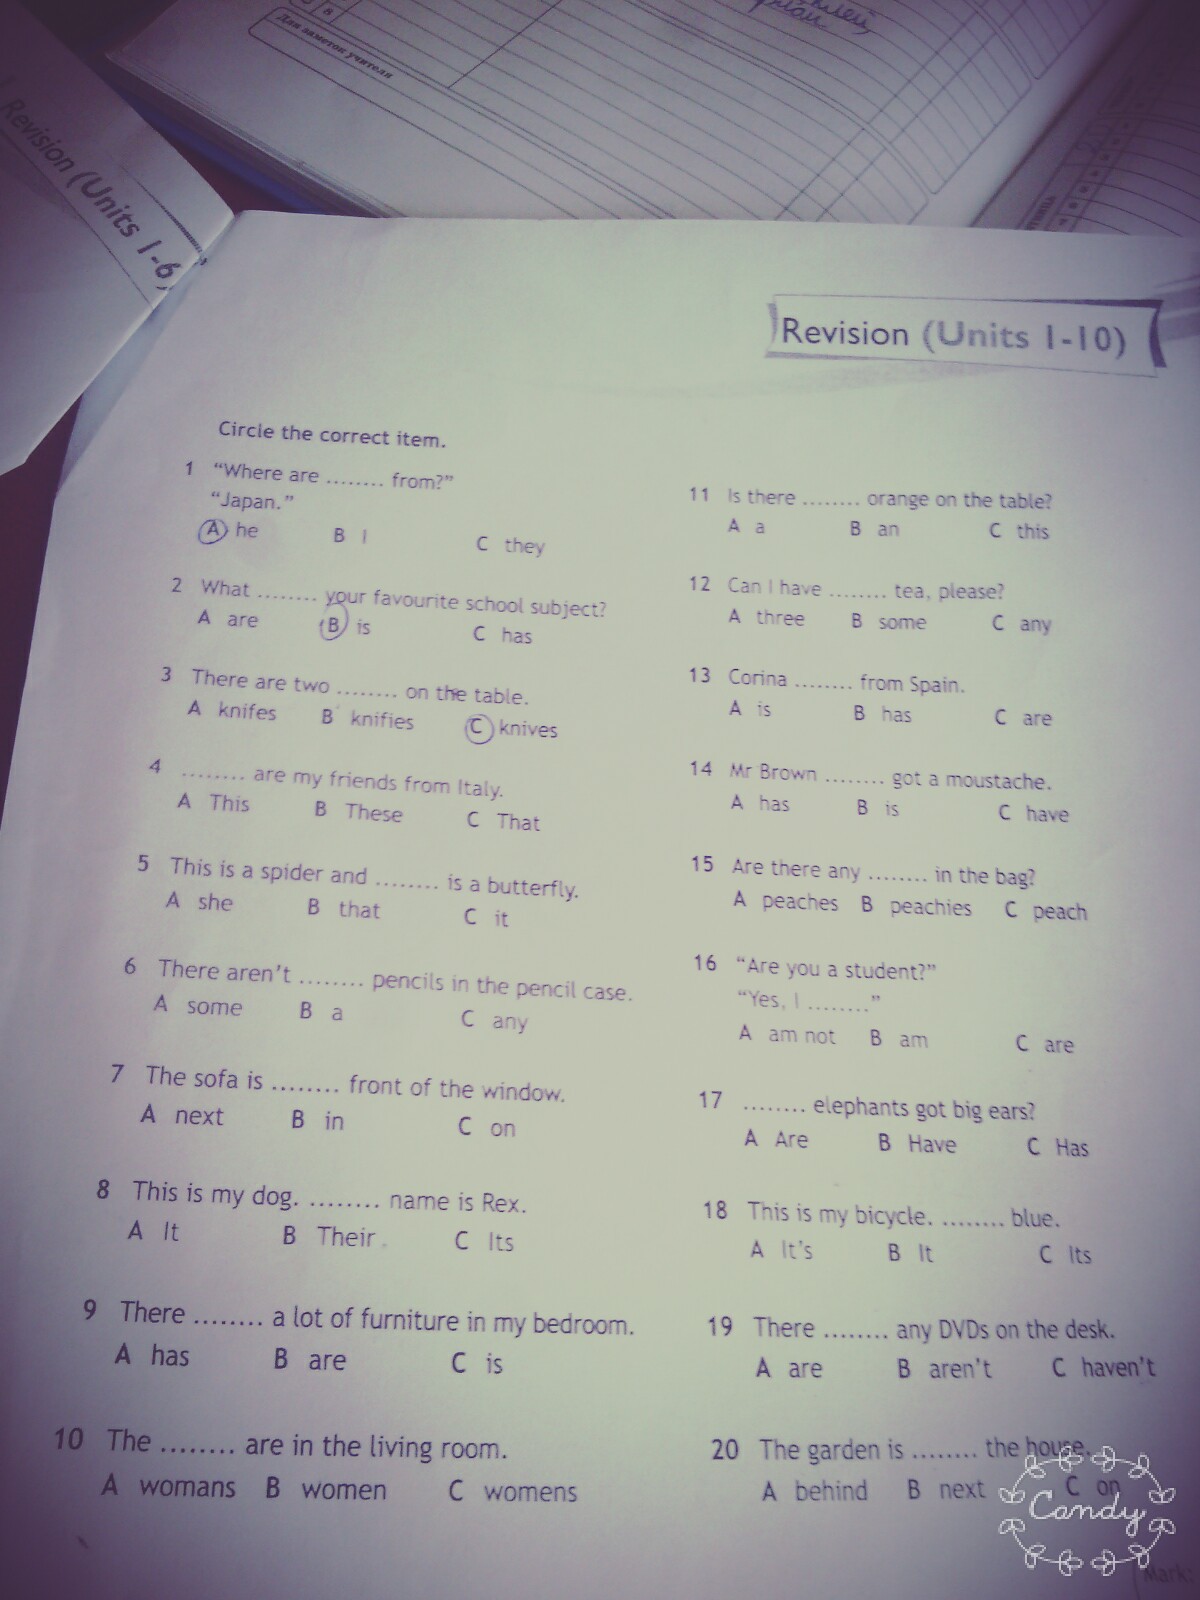 Revision unit 1. Revision 1-3 Units ответы. Revision Units 1-2 ответы. Revision 2 Units 1-10 ответы. Revision 1 Units 1-4 ответы.